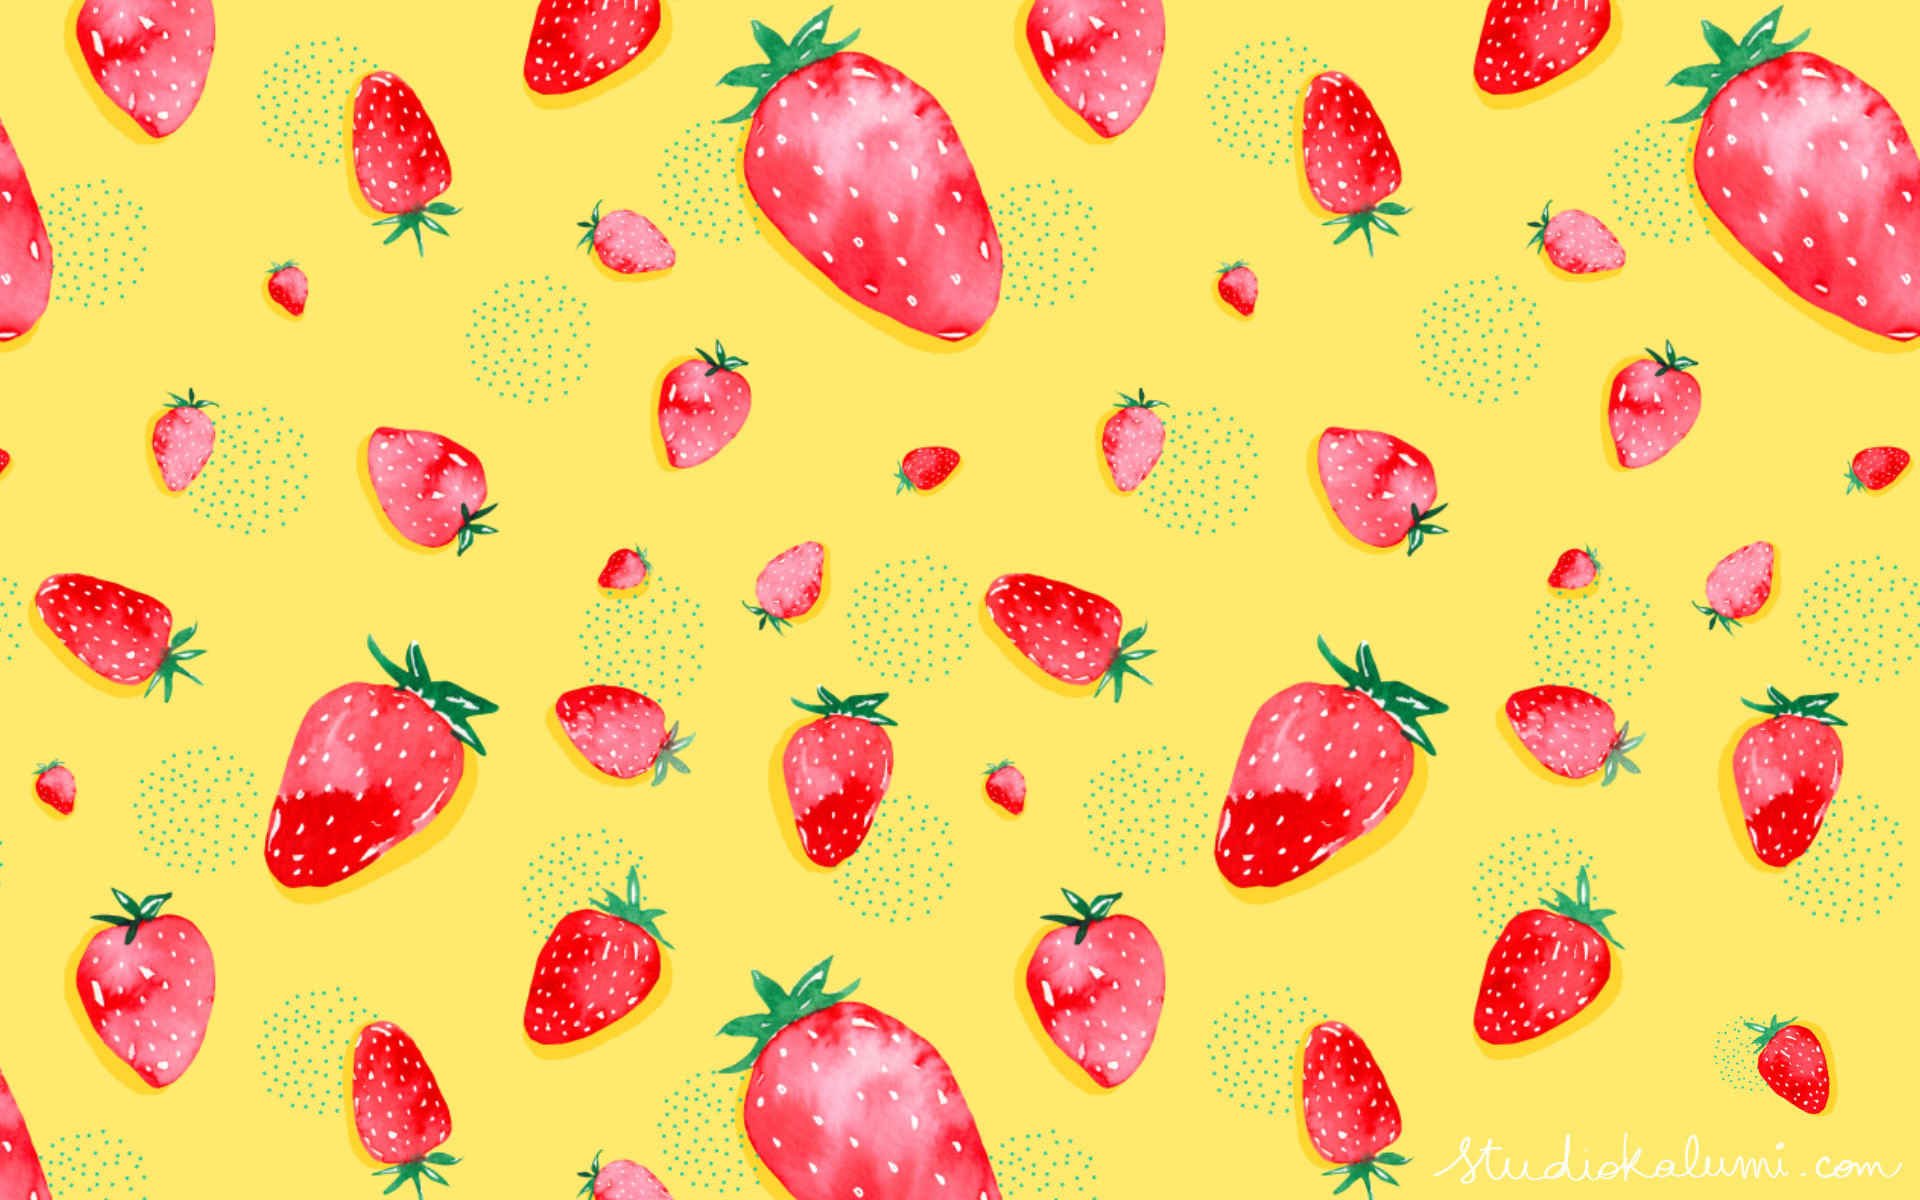 ... Strawberry-field-desktop-wallpaper 1920x1200.